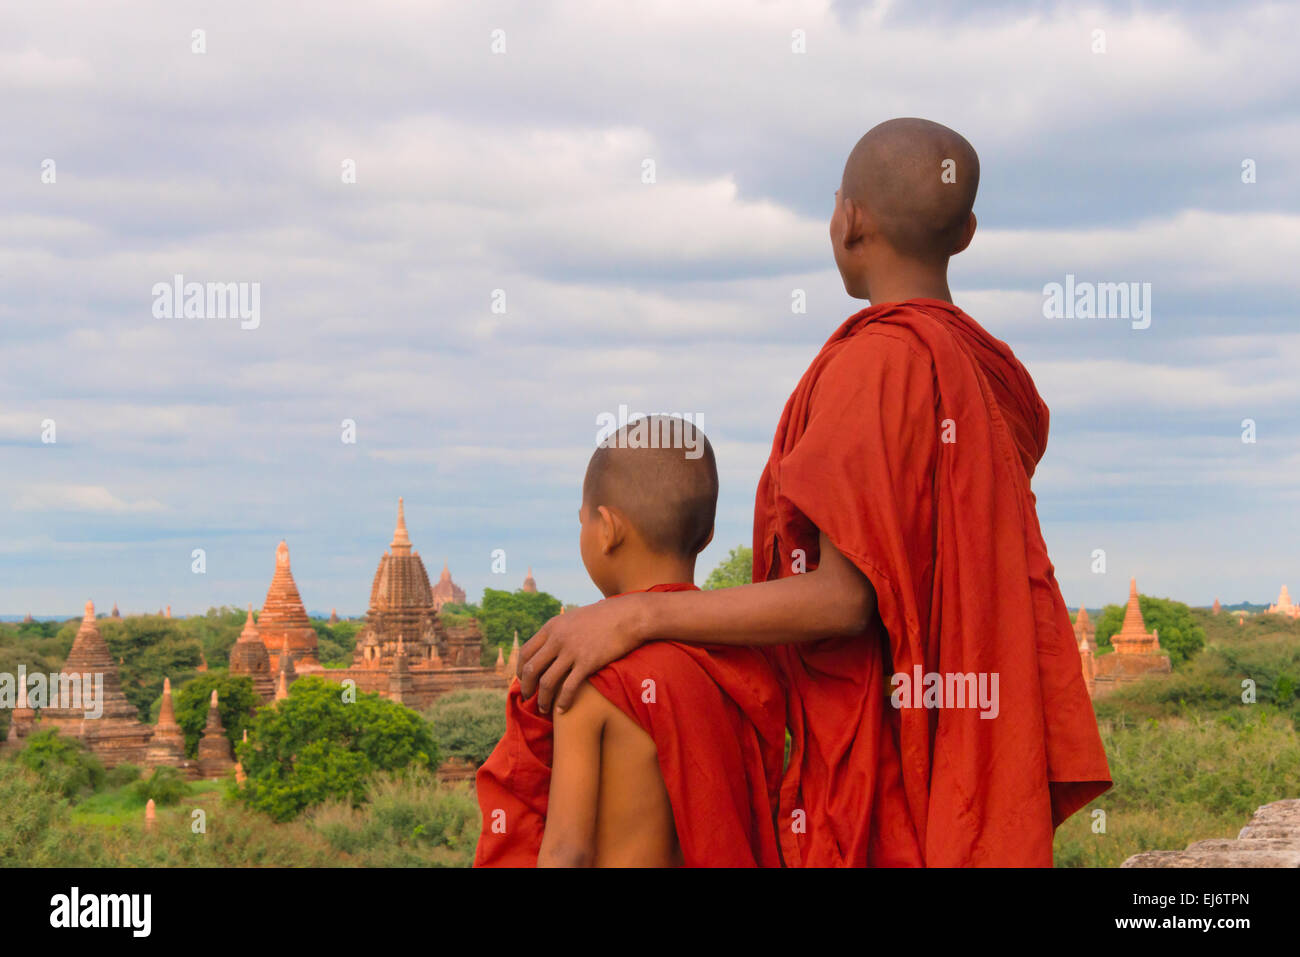 Moines des anciens temples et pagodes, Bagan, Mandalay, Myanmar Région Banque D'Images